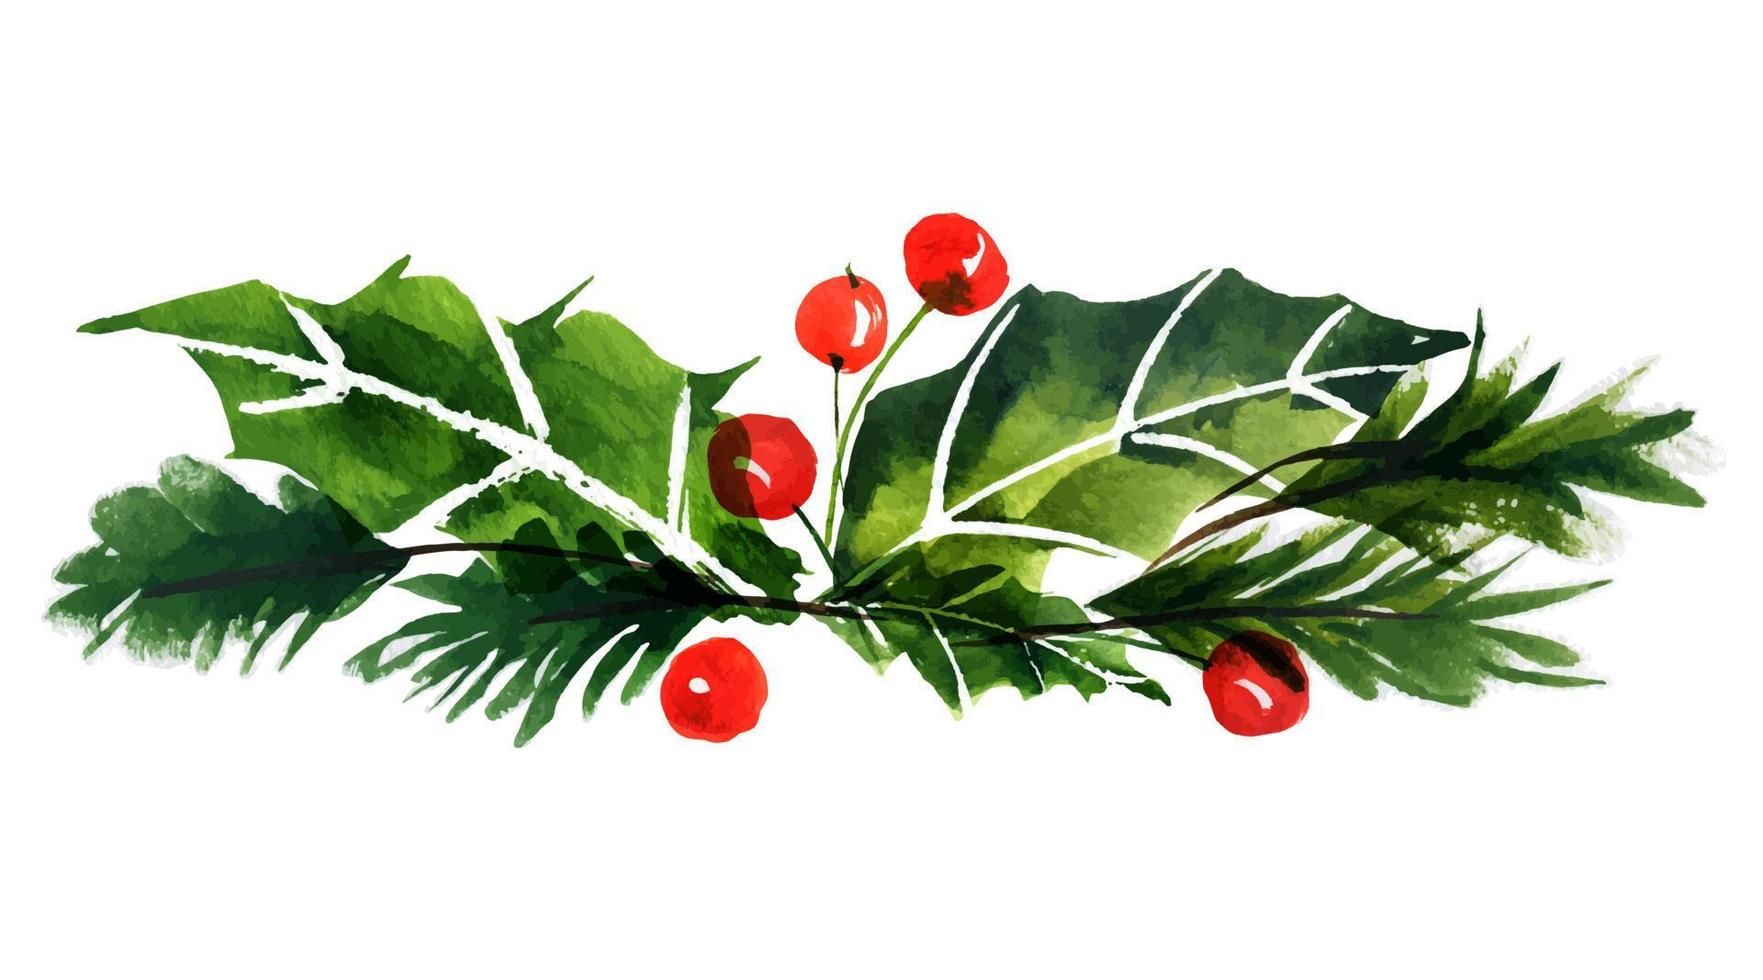 blumenstrauß aus neujahrsbaum und stechpalme. aquarell botanischer aufkleber für niedliche weihnachts- und neujahrsgruß- und einladungskarten. vektor